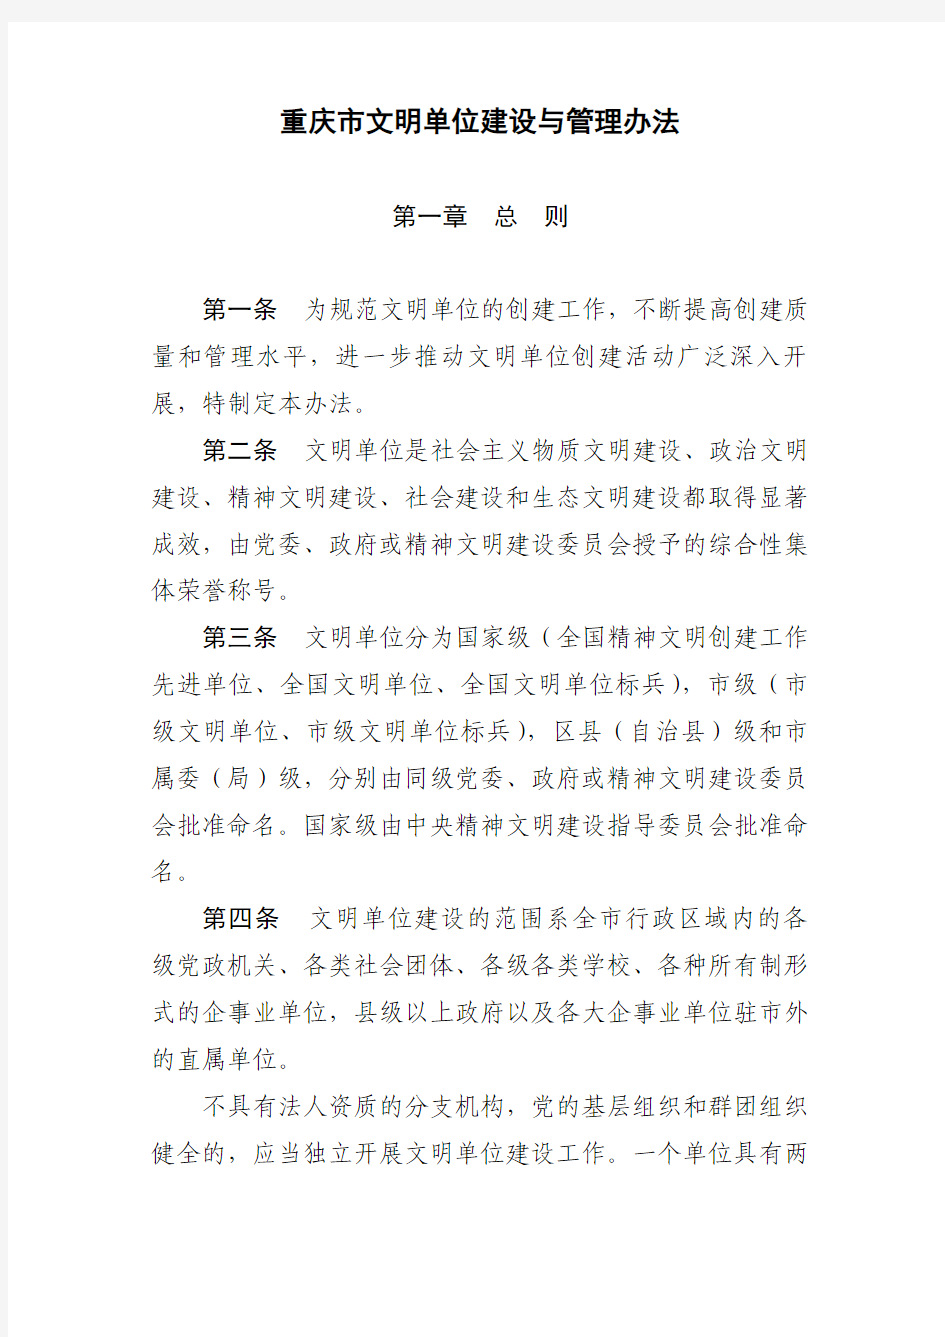 重庆市文明单位建设与管理办法(2011)[1]